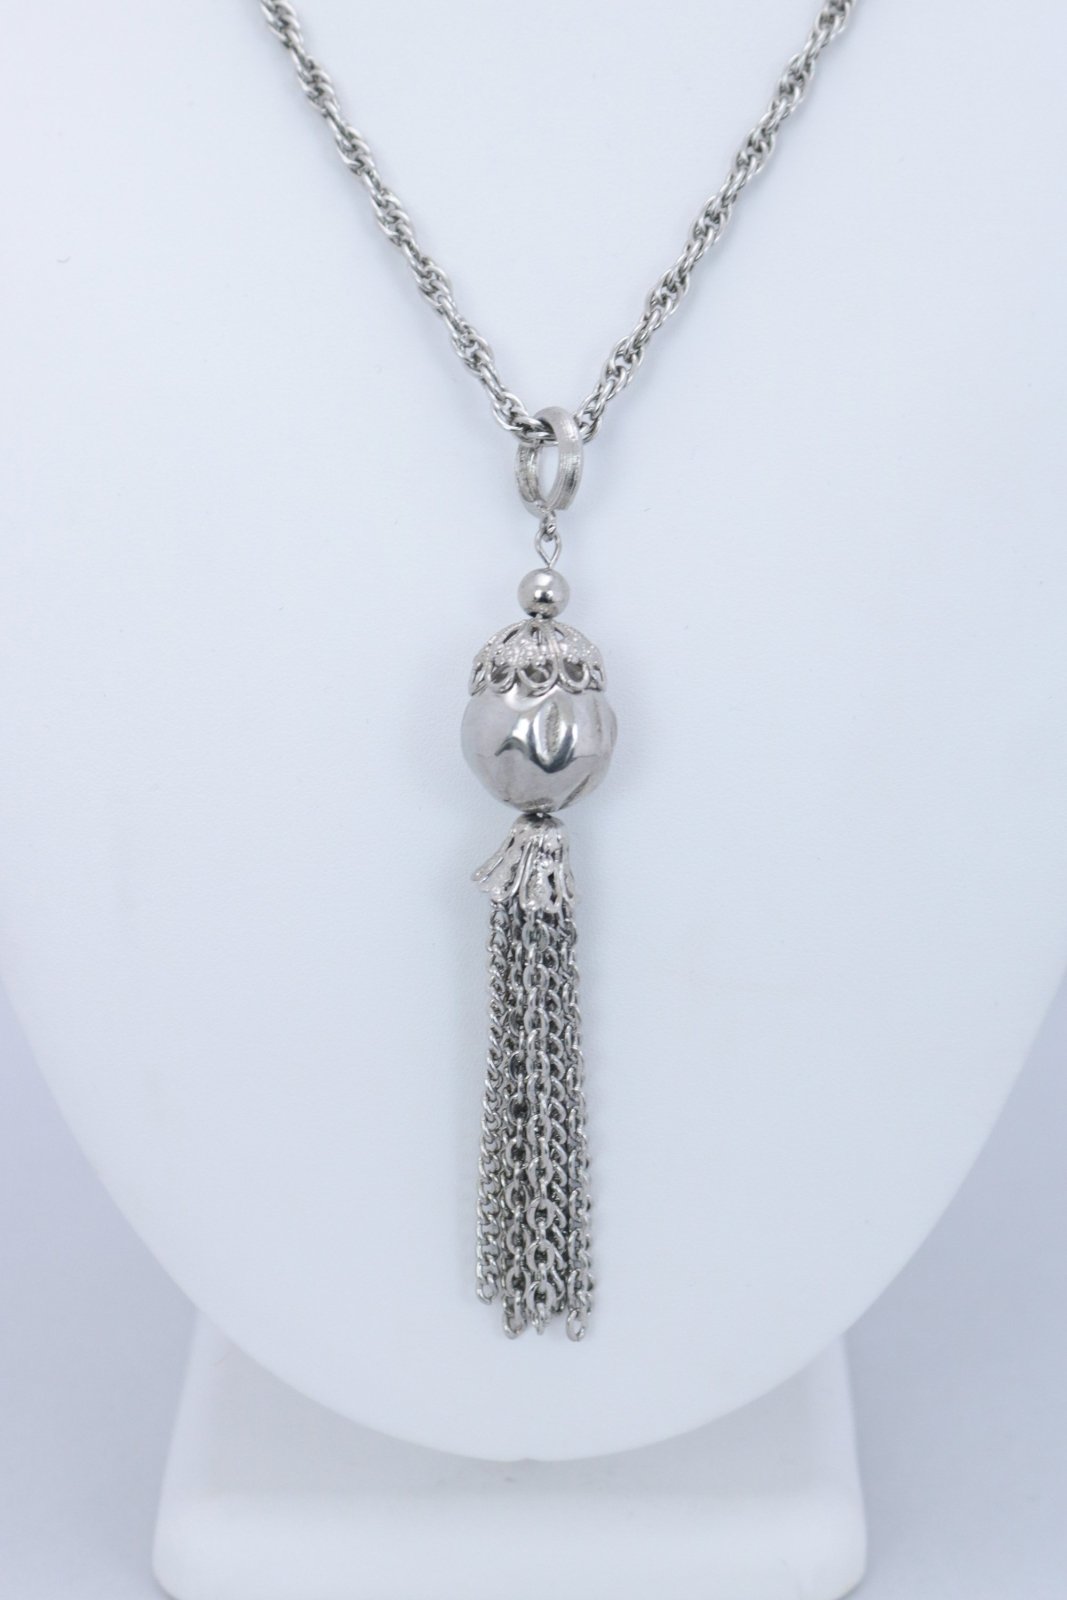 1960s Tassel Pendant Necklace - Floria Vintage